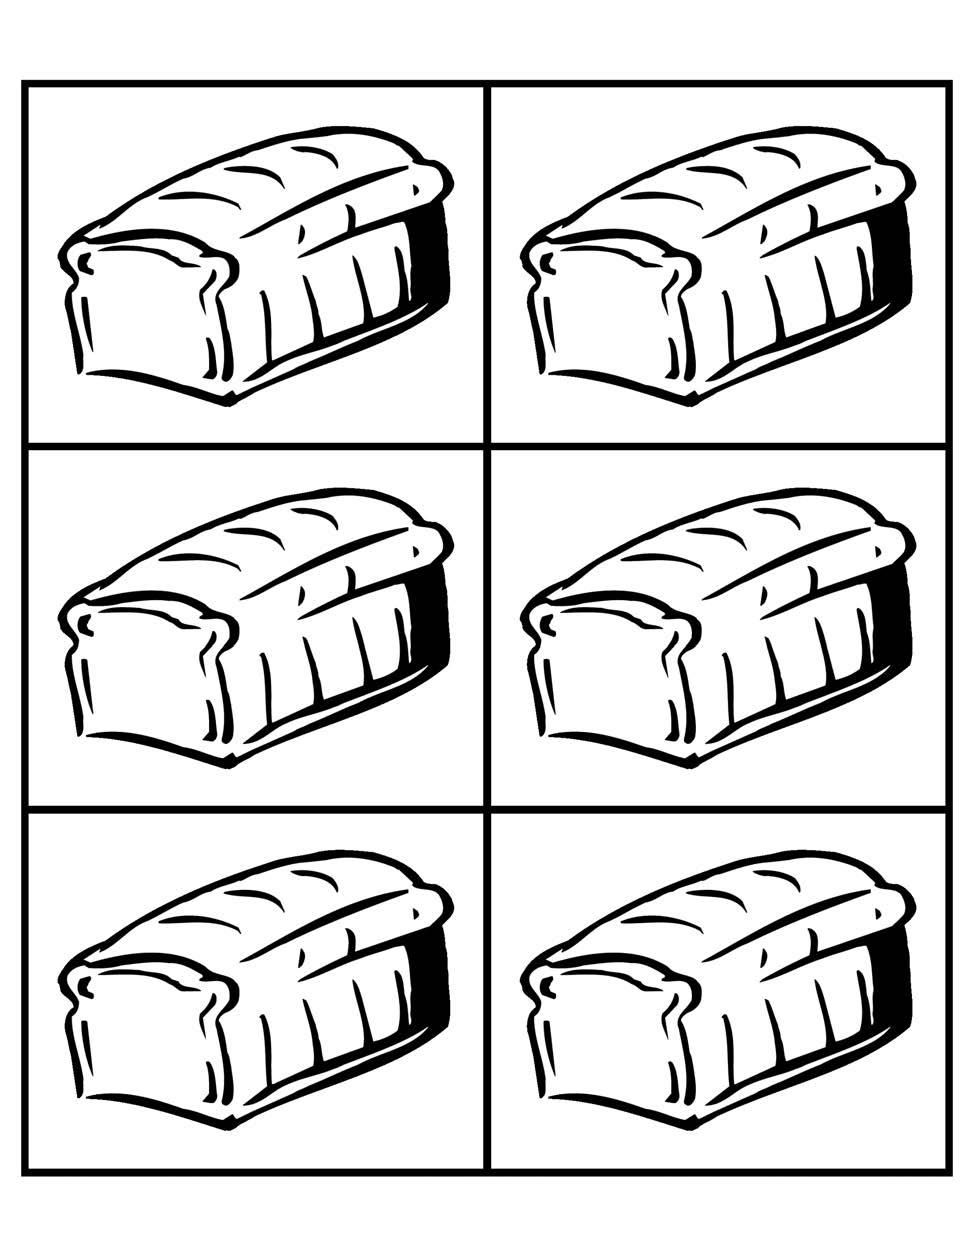 Pâini şi peşti Lecţia 4 Fotocopiază pâinile şi peştii pe carton colorat. Pentru jocul recapitulativ, decupează cinci din f iecare, şi lipeşte pe spate hârtie de rolă de bucătărie sau f lanel.